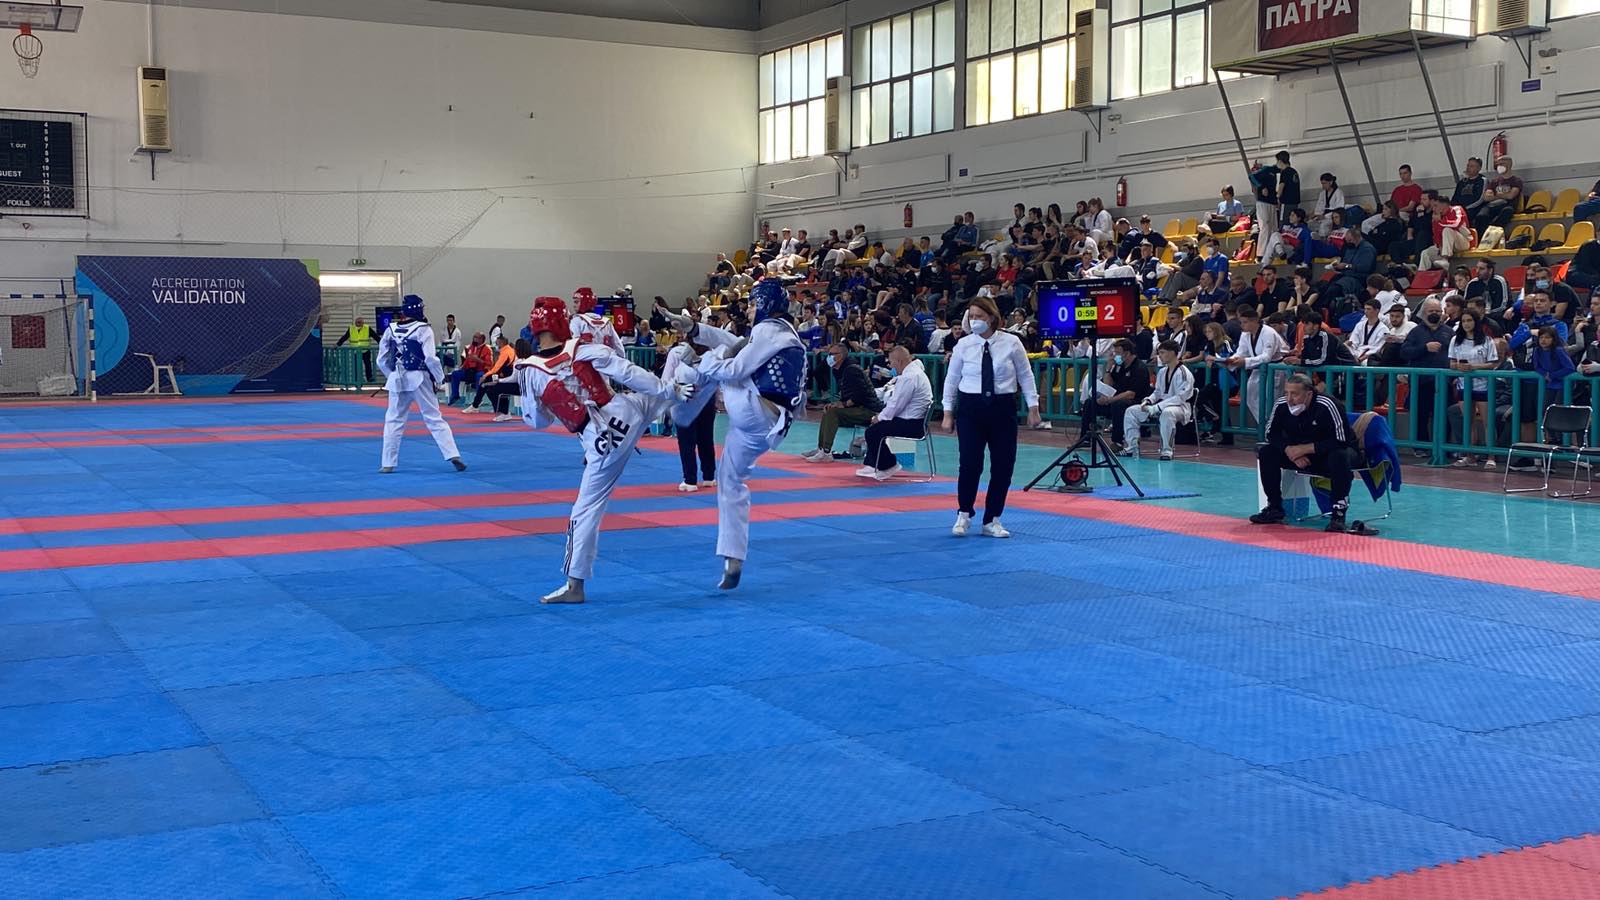 Πανελλήνιο Σχολικό Πρωτάθλημα TAE KWON DO: Τα αποτελέσματα της πρώτης μέρας